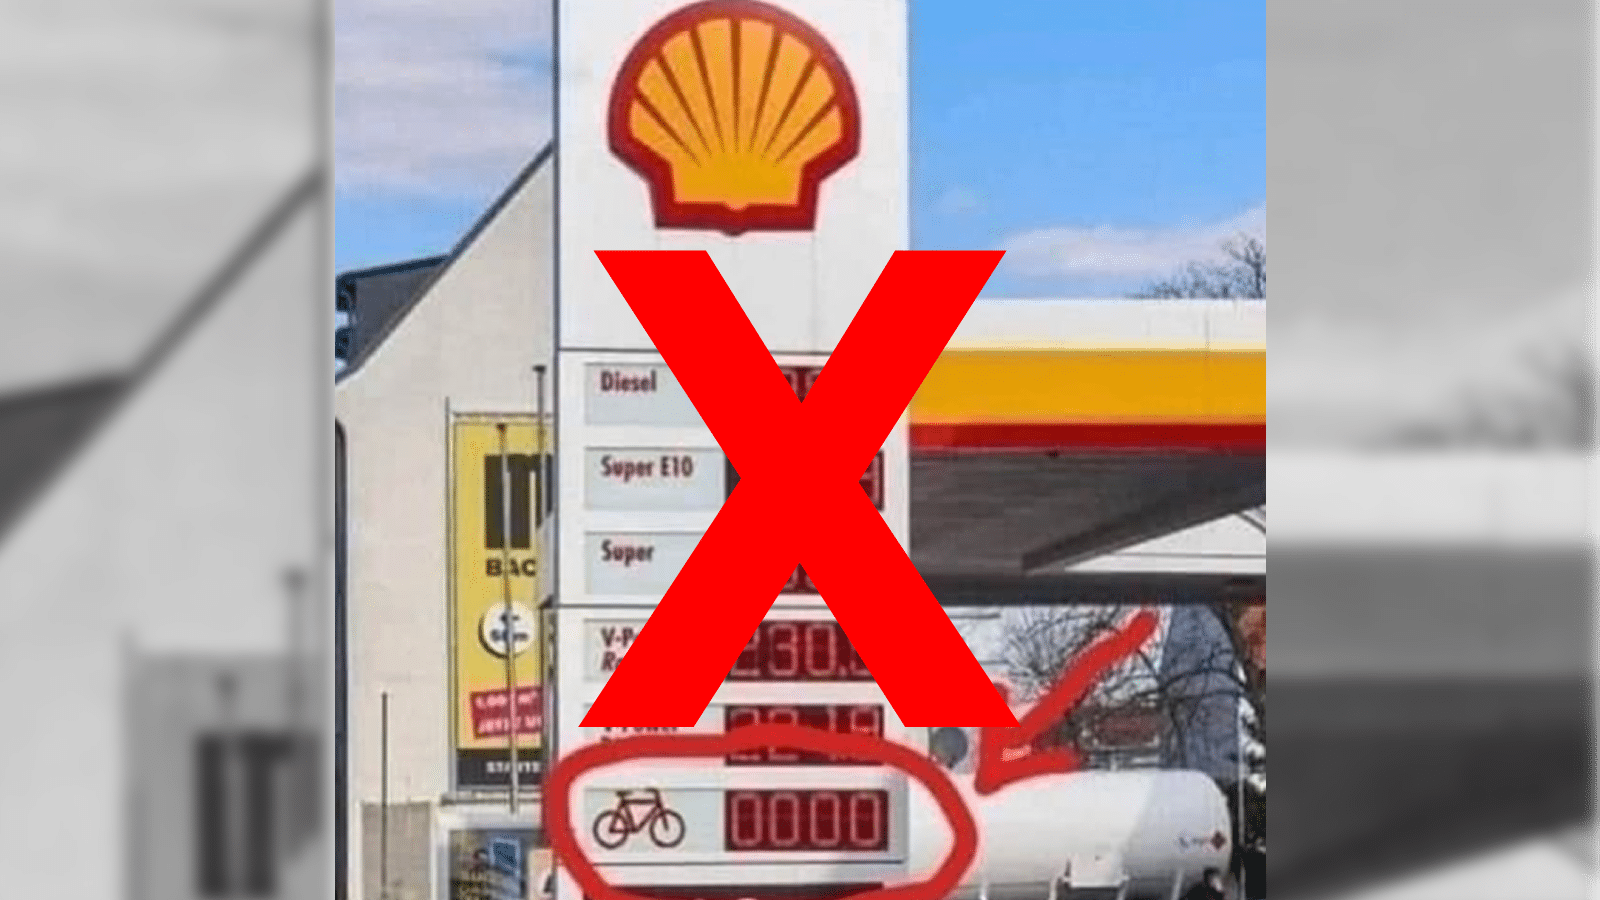 Nein, auf der Anzeigentafel der Shell-Tankstelle in Stuttgart wurde kein Fahrradsymbol angezeigt. Diese bestätigt eine Shell-Pressesprecherin